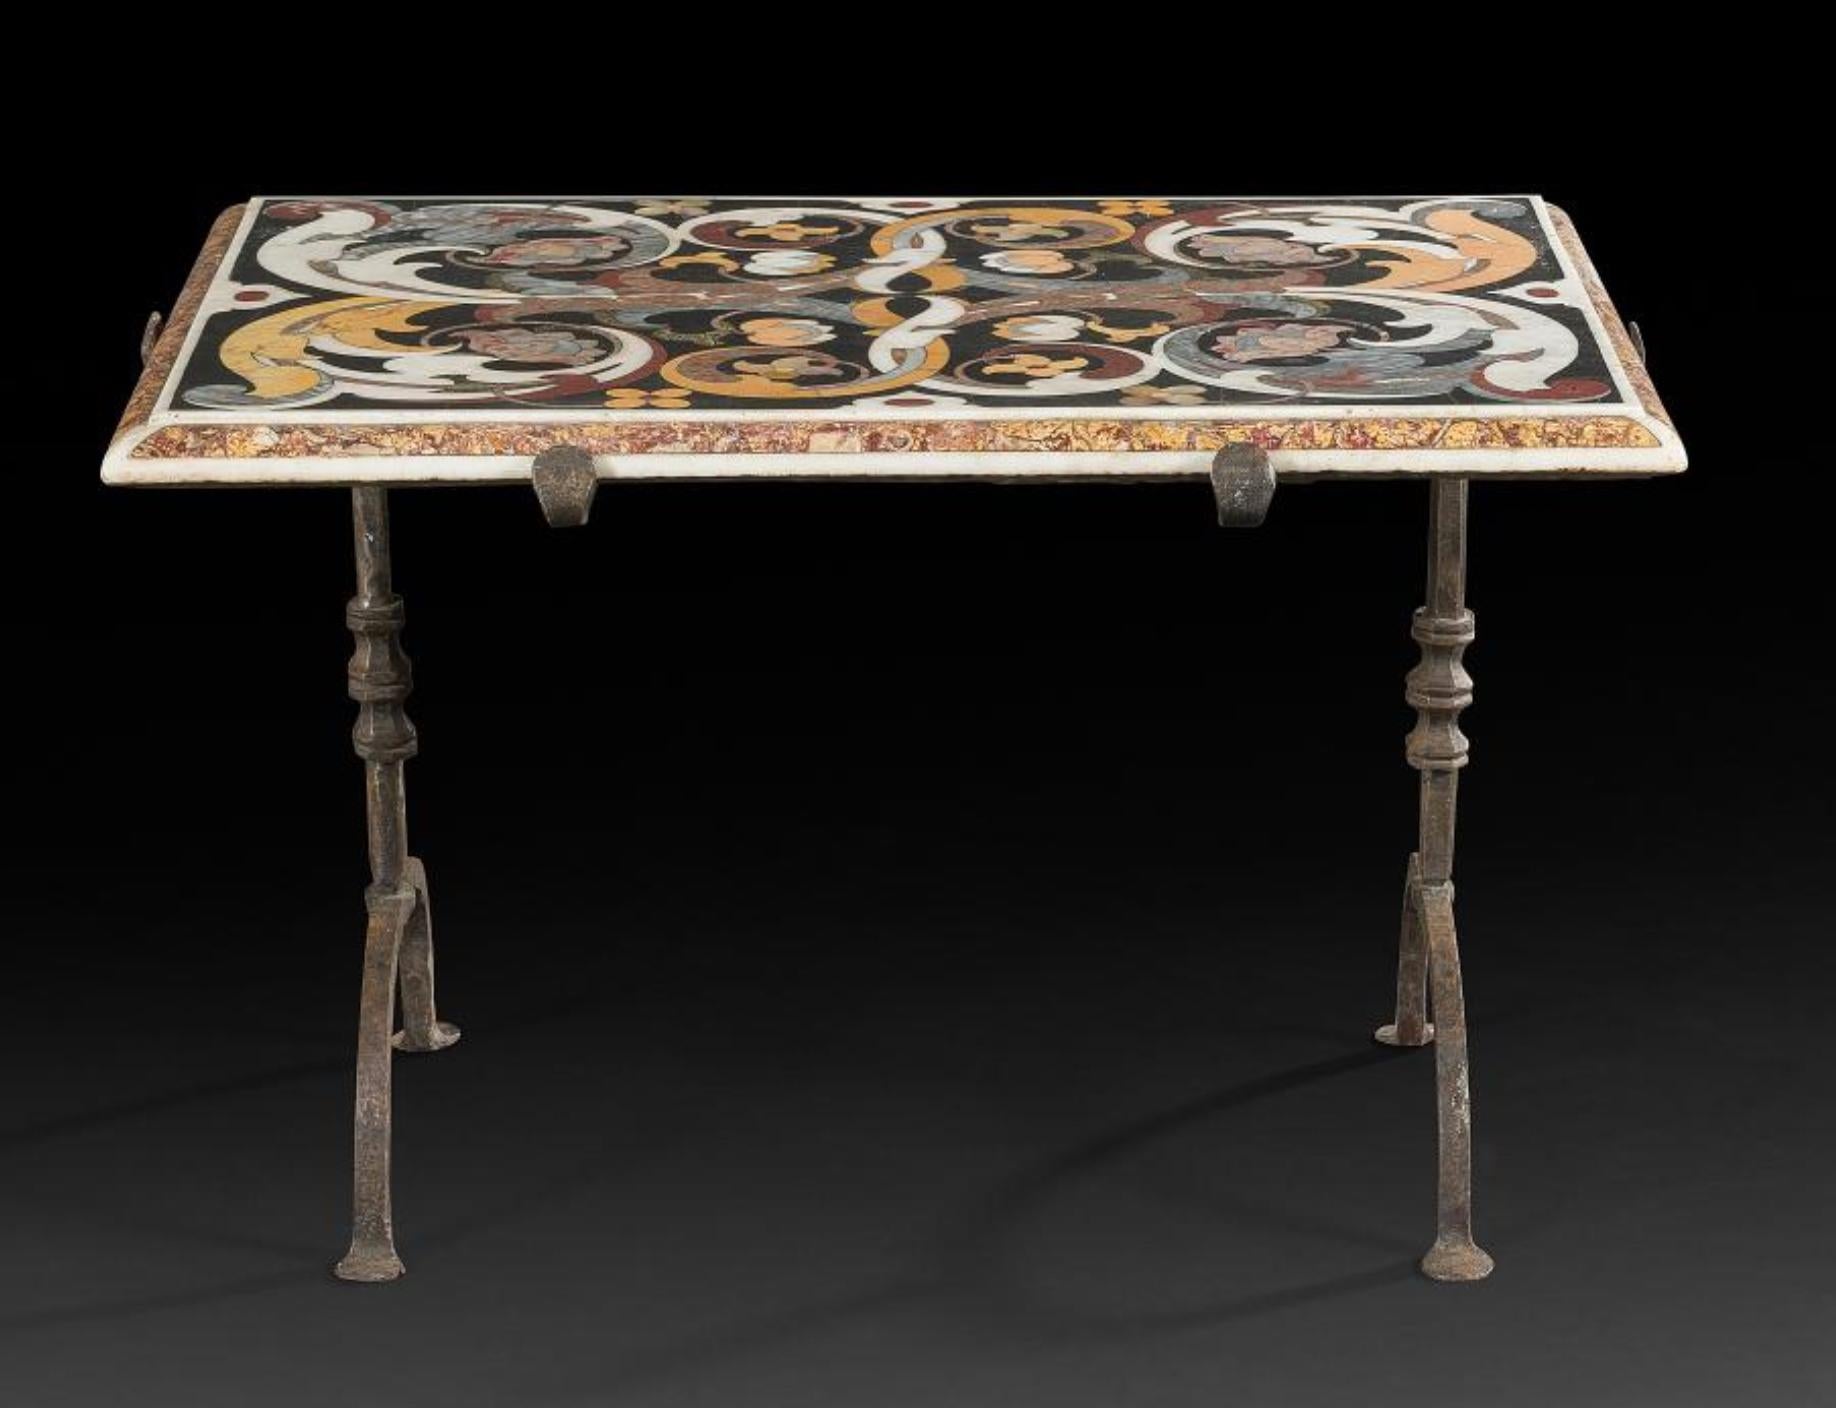 Rare table en marqueterie de marbre multicolore reposant sur des pieds en fer forgé.
Fabriqué au XVIIe siècle dans le style typique de Florentine, avec de nombreux motifs floraux sur une base noire.